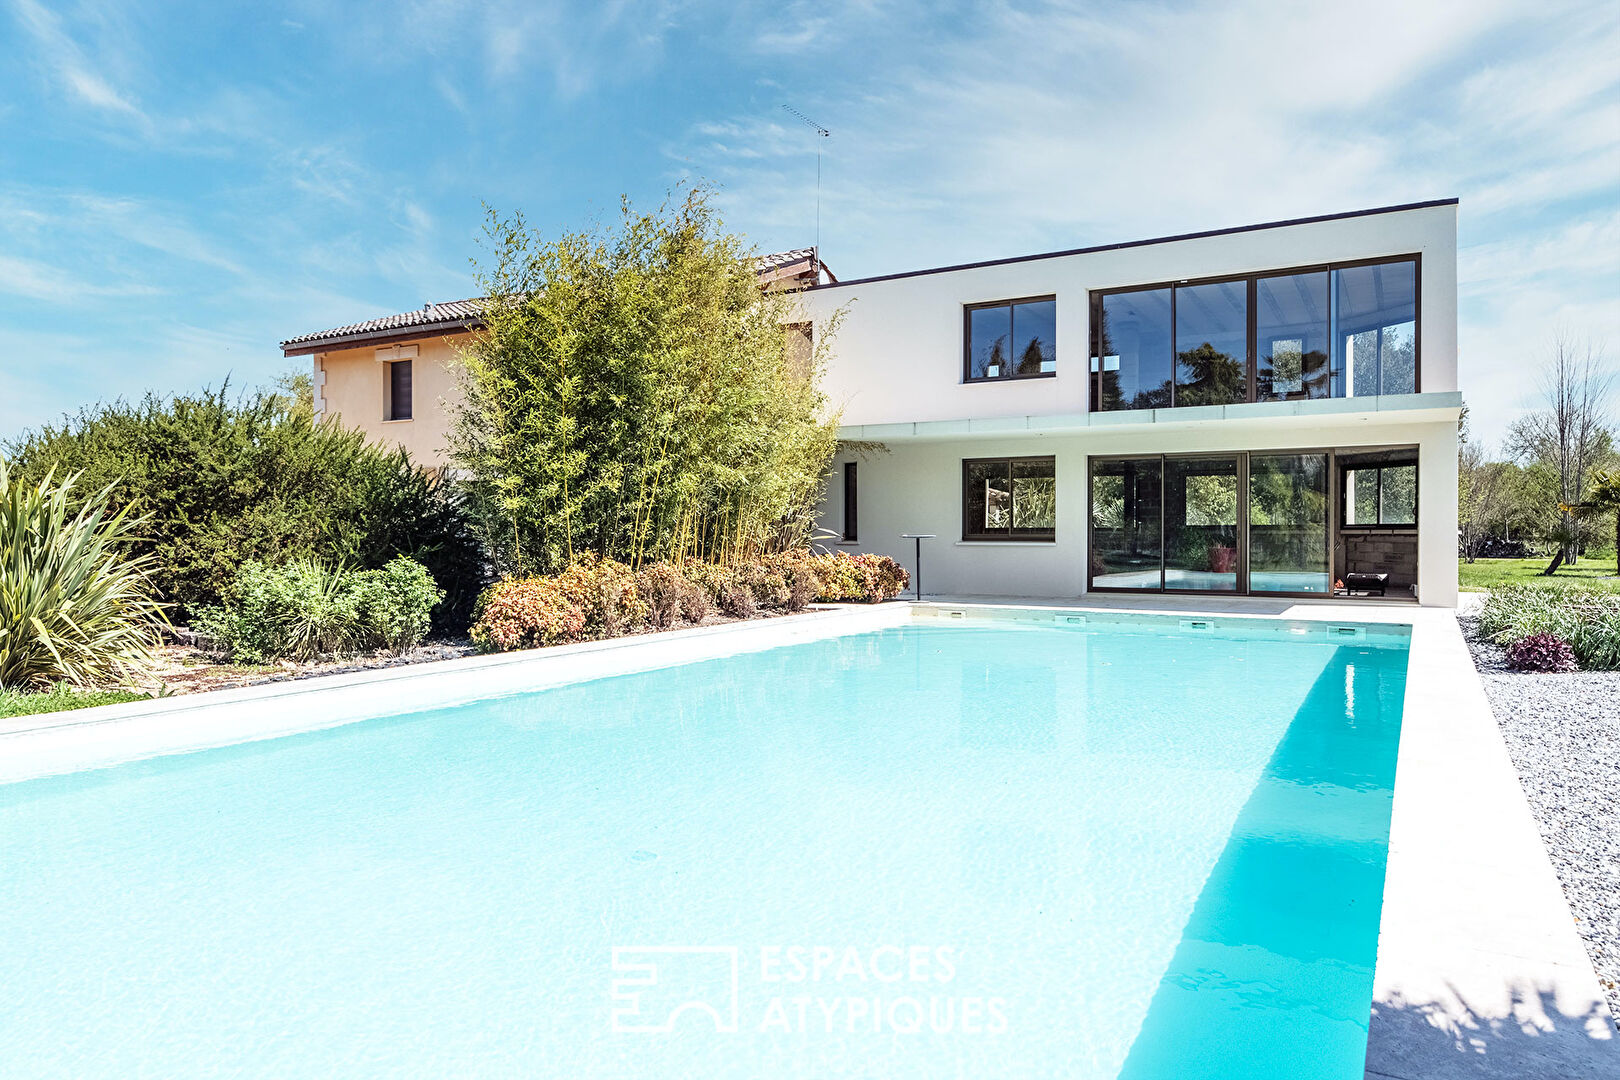 Villa avec piscine de style Néo contemporain, farniente et dolce vita…